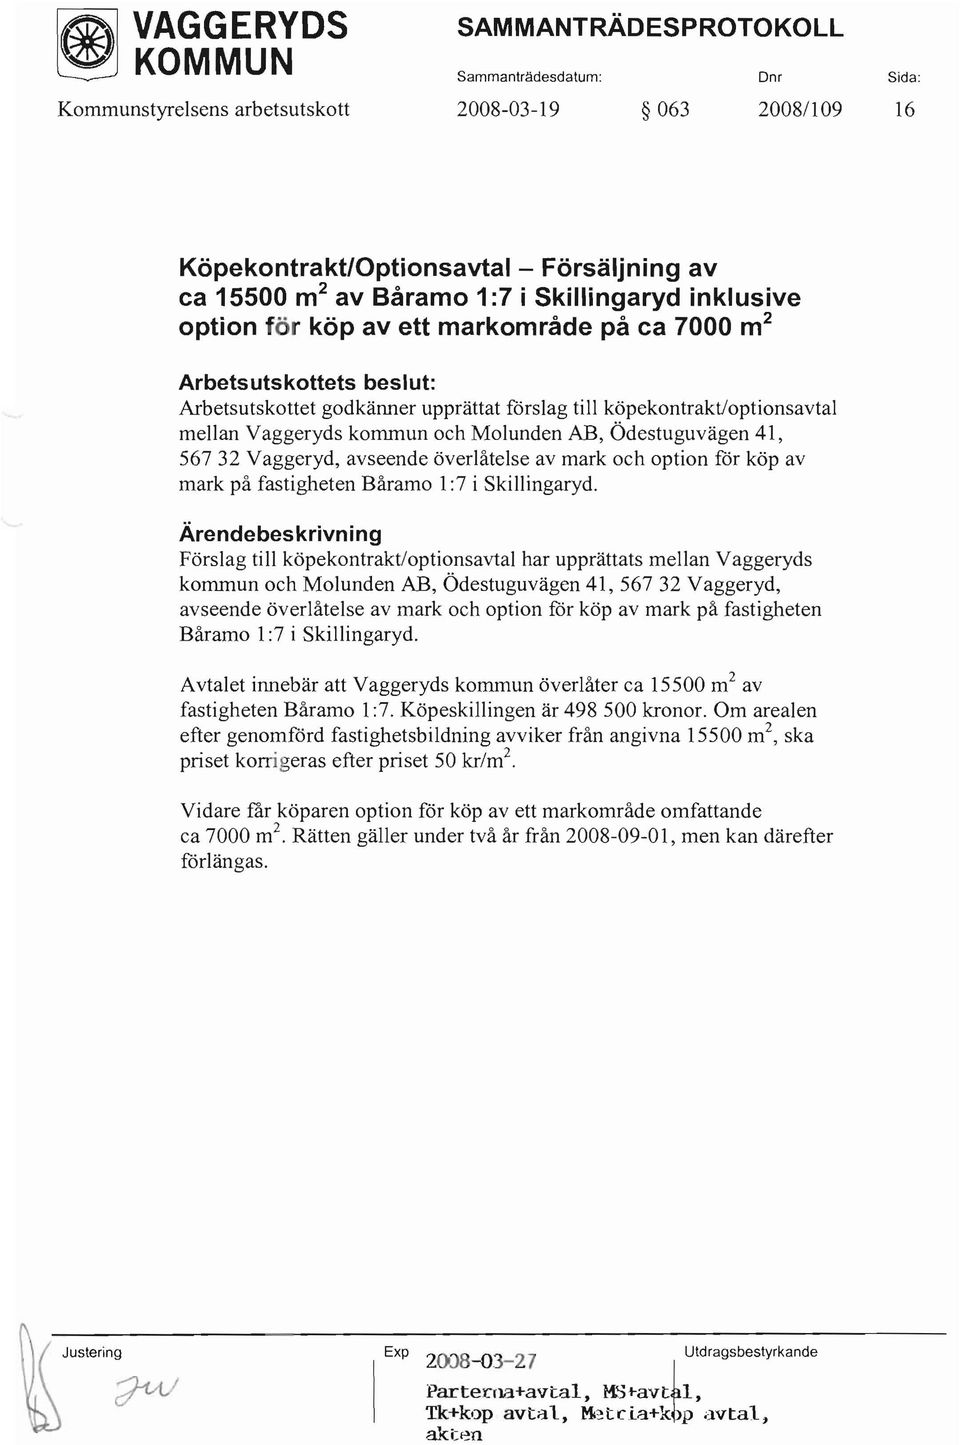 köpekontrakt/optionsavtal mellan Vaggeryds kommun och Molunden AB, Ödestuguvägen 41, 56732 Vaggeryd, avseende överlåtelse av mark och option för köp av mark på fastigheten Båramo 1:7 i Skillingaryd.